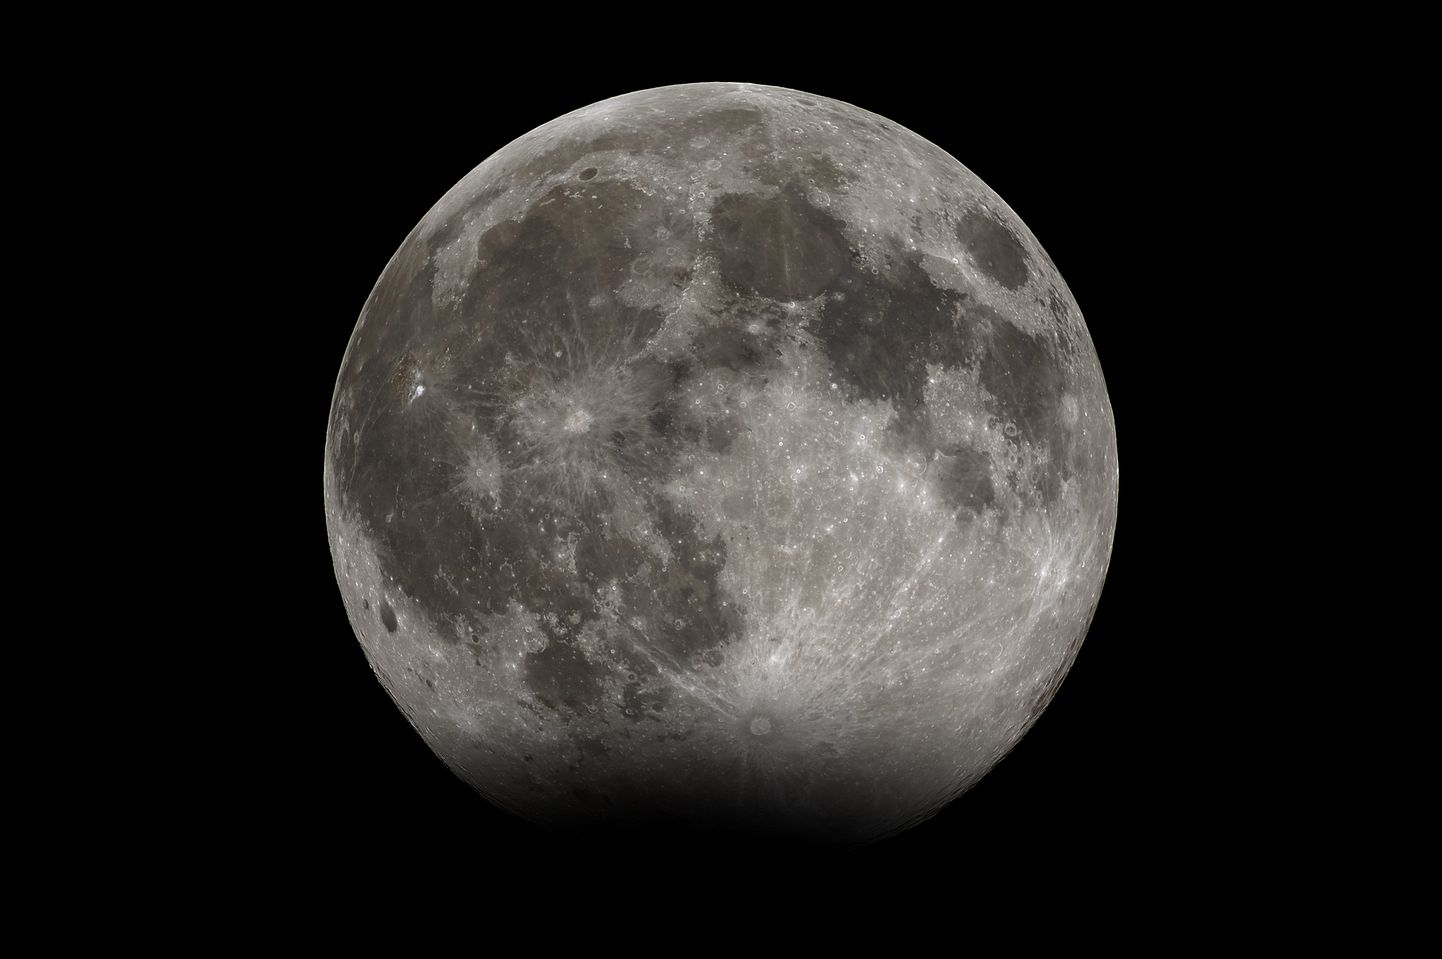 Umbes selline võib laupäevase kuuvarjutuse tipuhetk teleskoobis välja näha. Lisaks täisvarjule paistab terve Kuu tavalisest ka veidi tumedam. Foto Kuust on tehtud eelmise aasta jaanuaris Tõrvast.